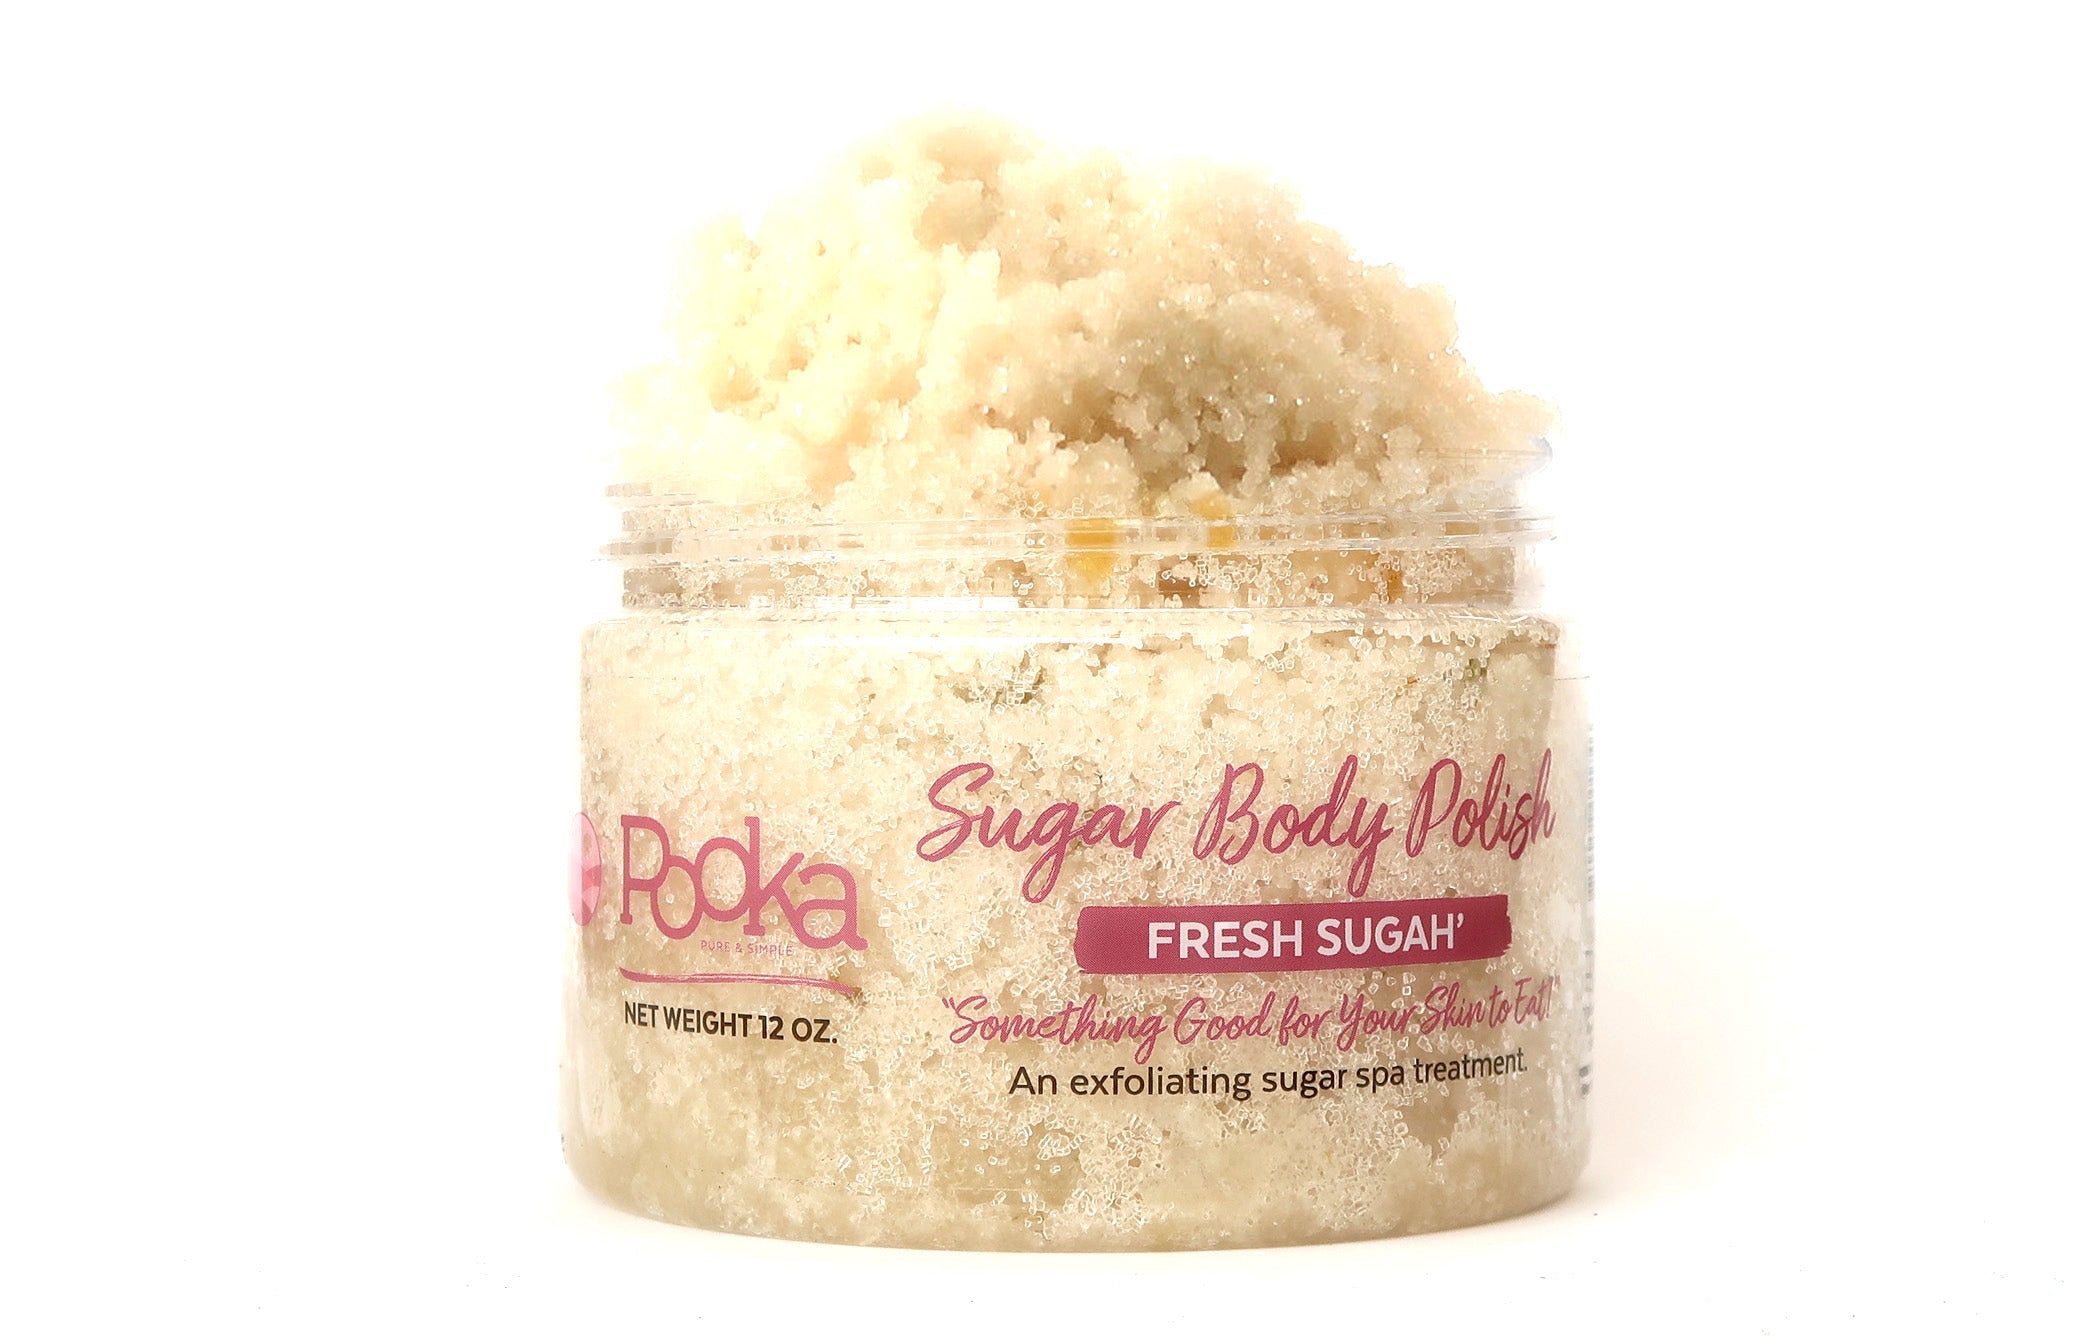 Fresh Sugah Body Polish - Pooka Pure and Simple